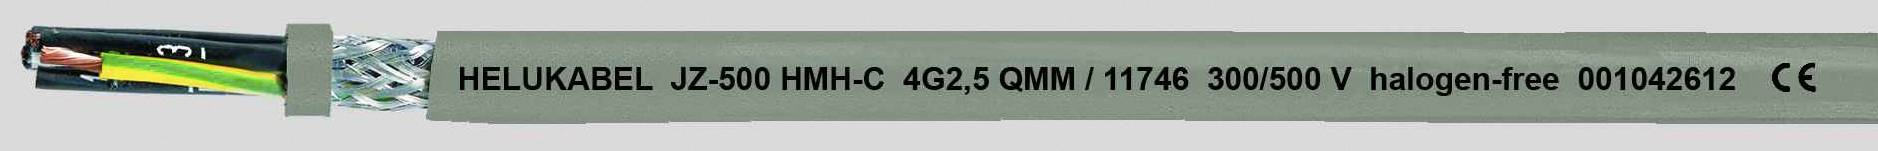 HELUKABEL JZ-500 HMH-C Steuerleitung 3 G 1.50 mm² Grau 11723-500 500 m